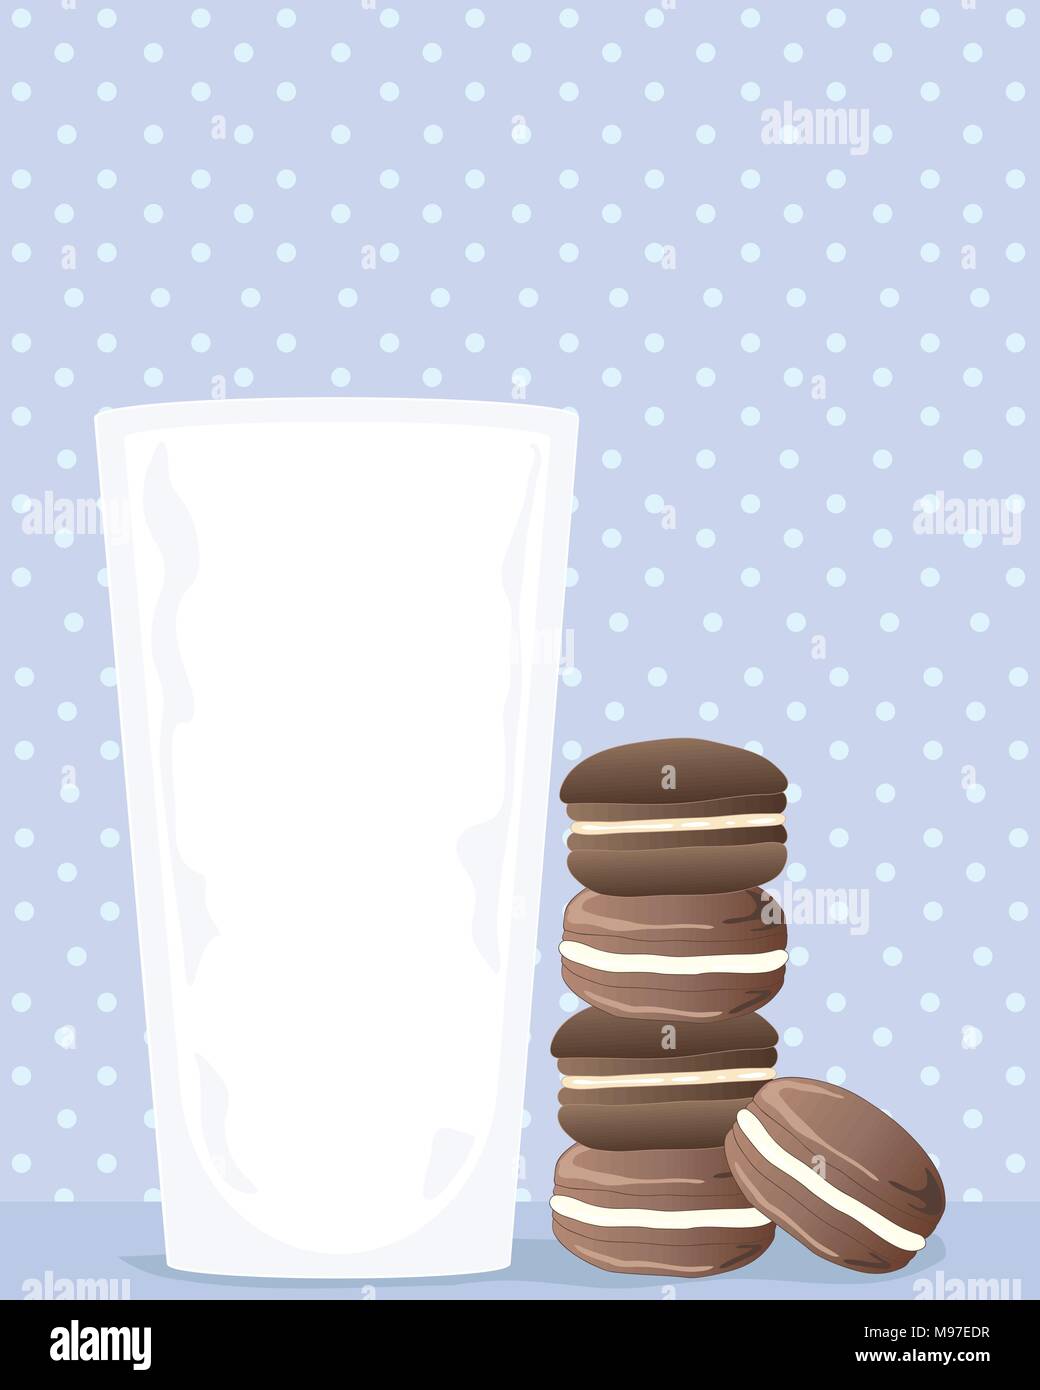 Une illustration d'un verre de lait avec une pile de biscuits au chocolat sur un fond bleu pâle tachetées Illustration de Vecteur